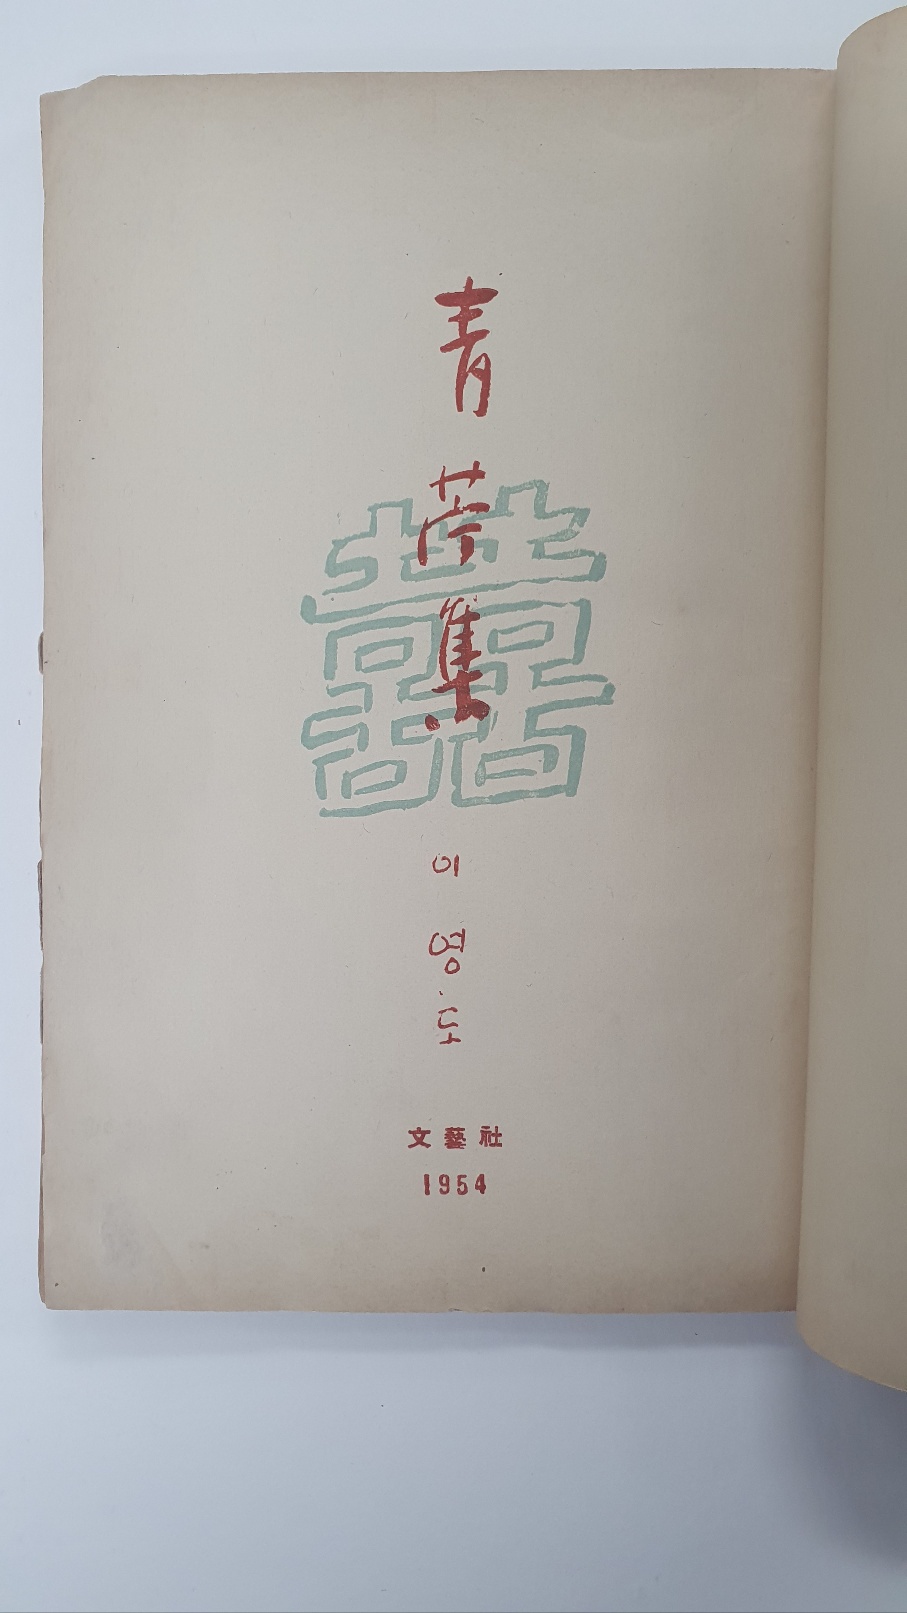 이영도 첫 시조집 [청저집 靑苧集] 1954 초판 저자증정본